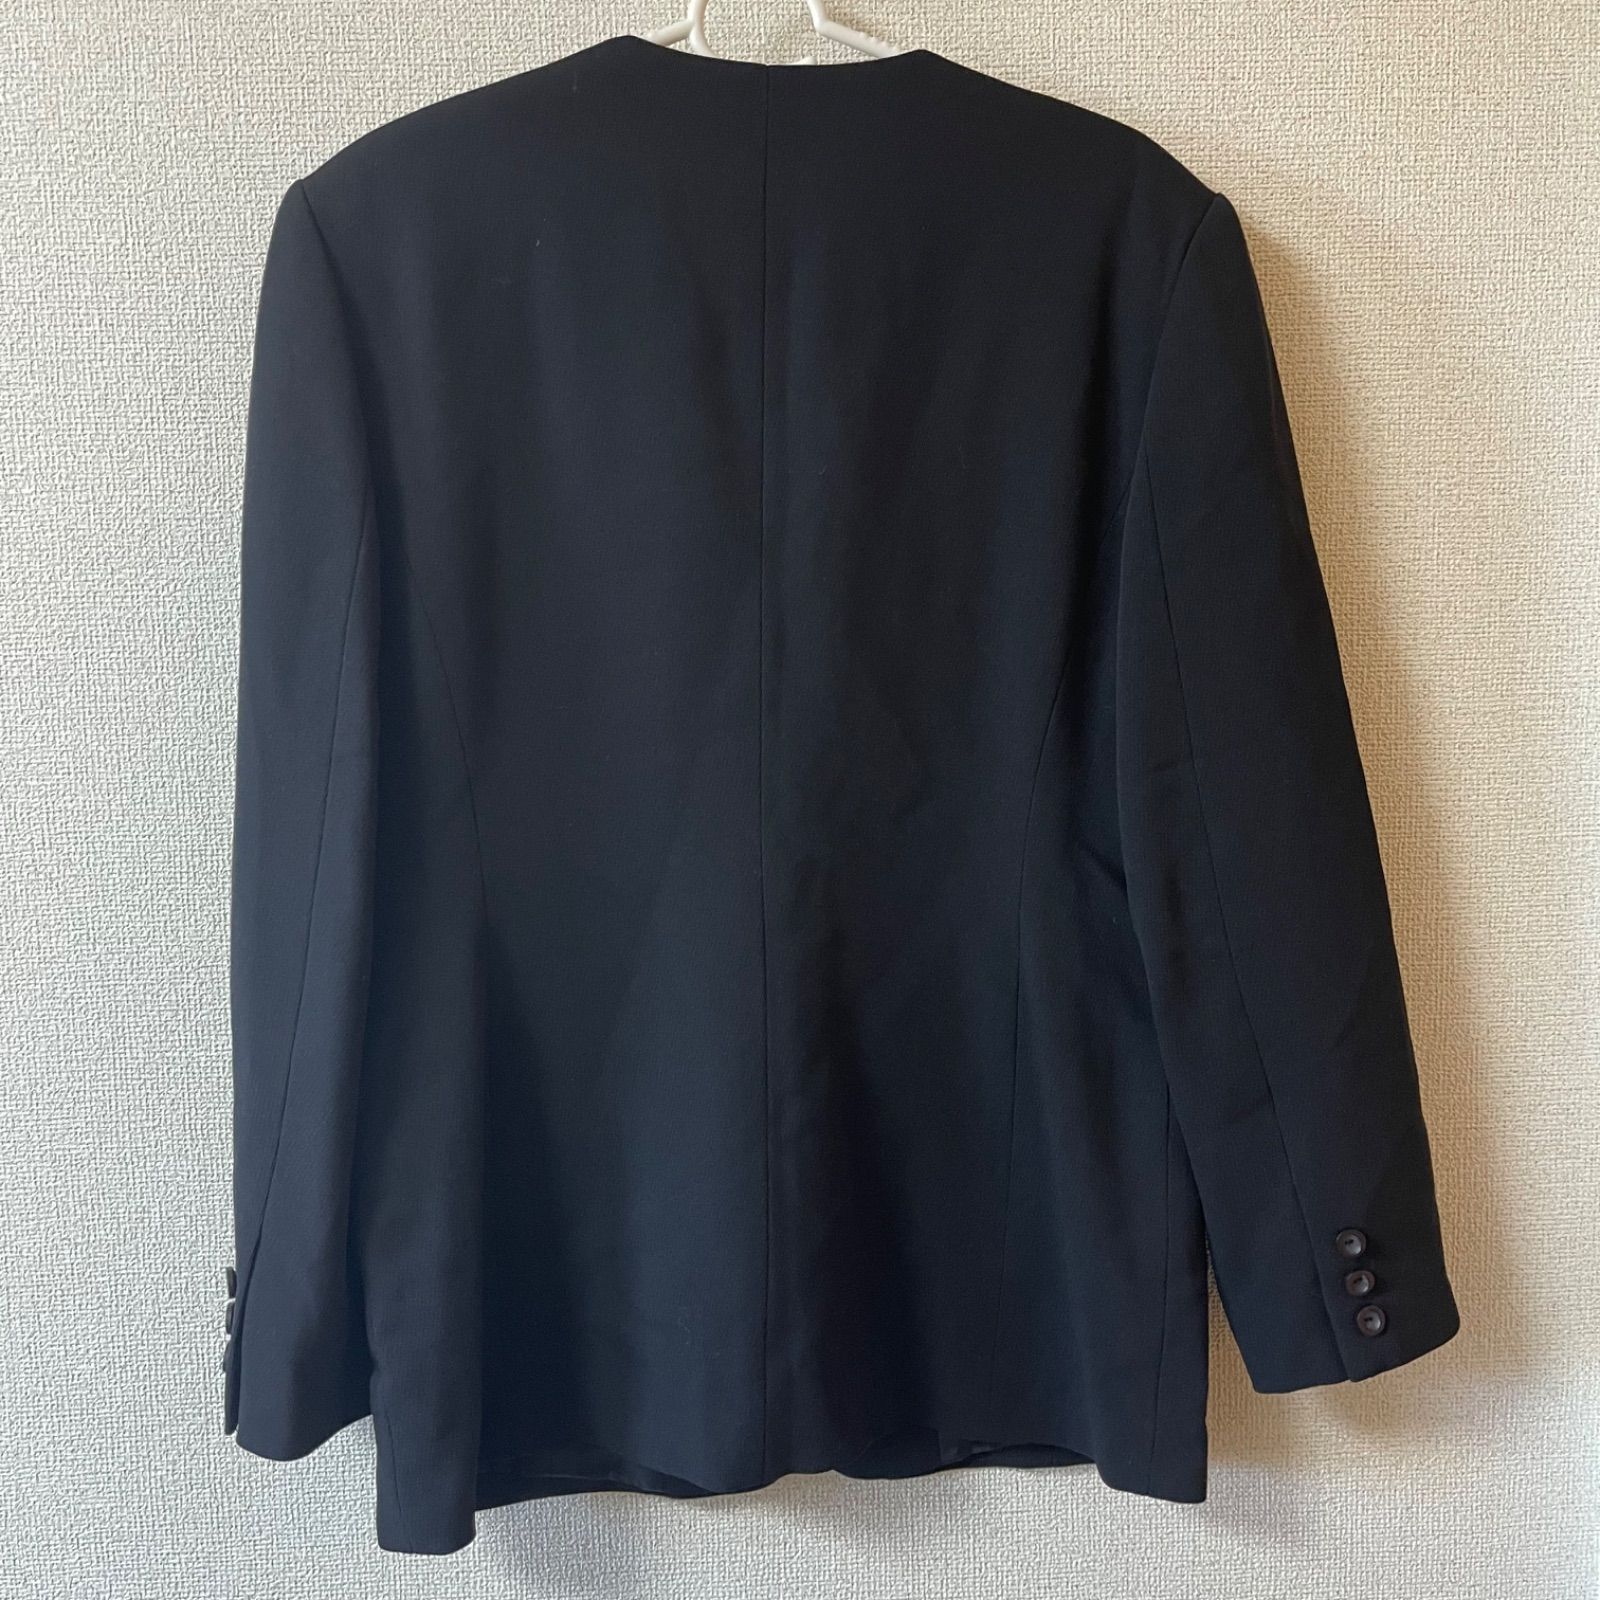 Z263 【美品】 milaschon ミラショーン テーラードジャケット